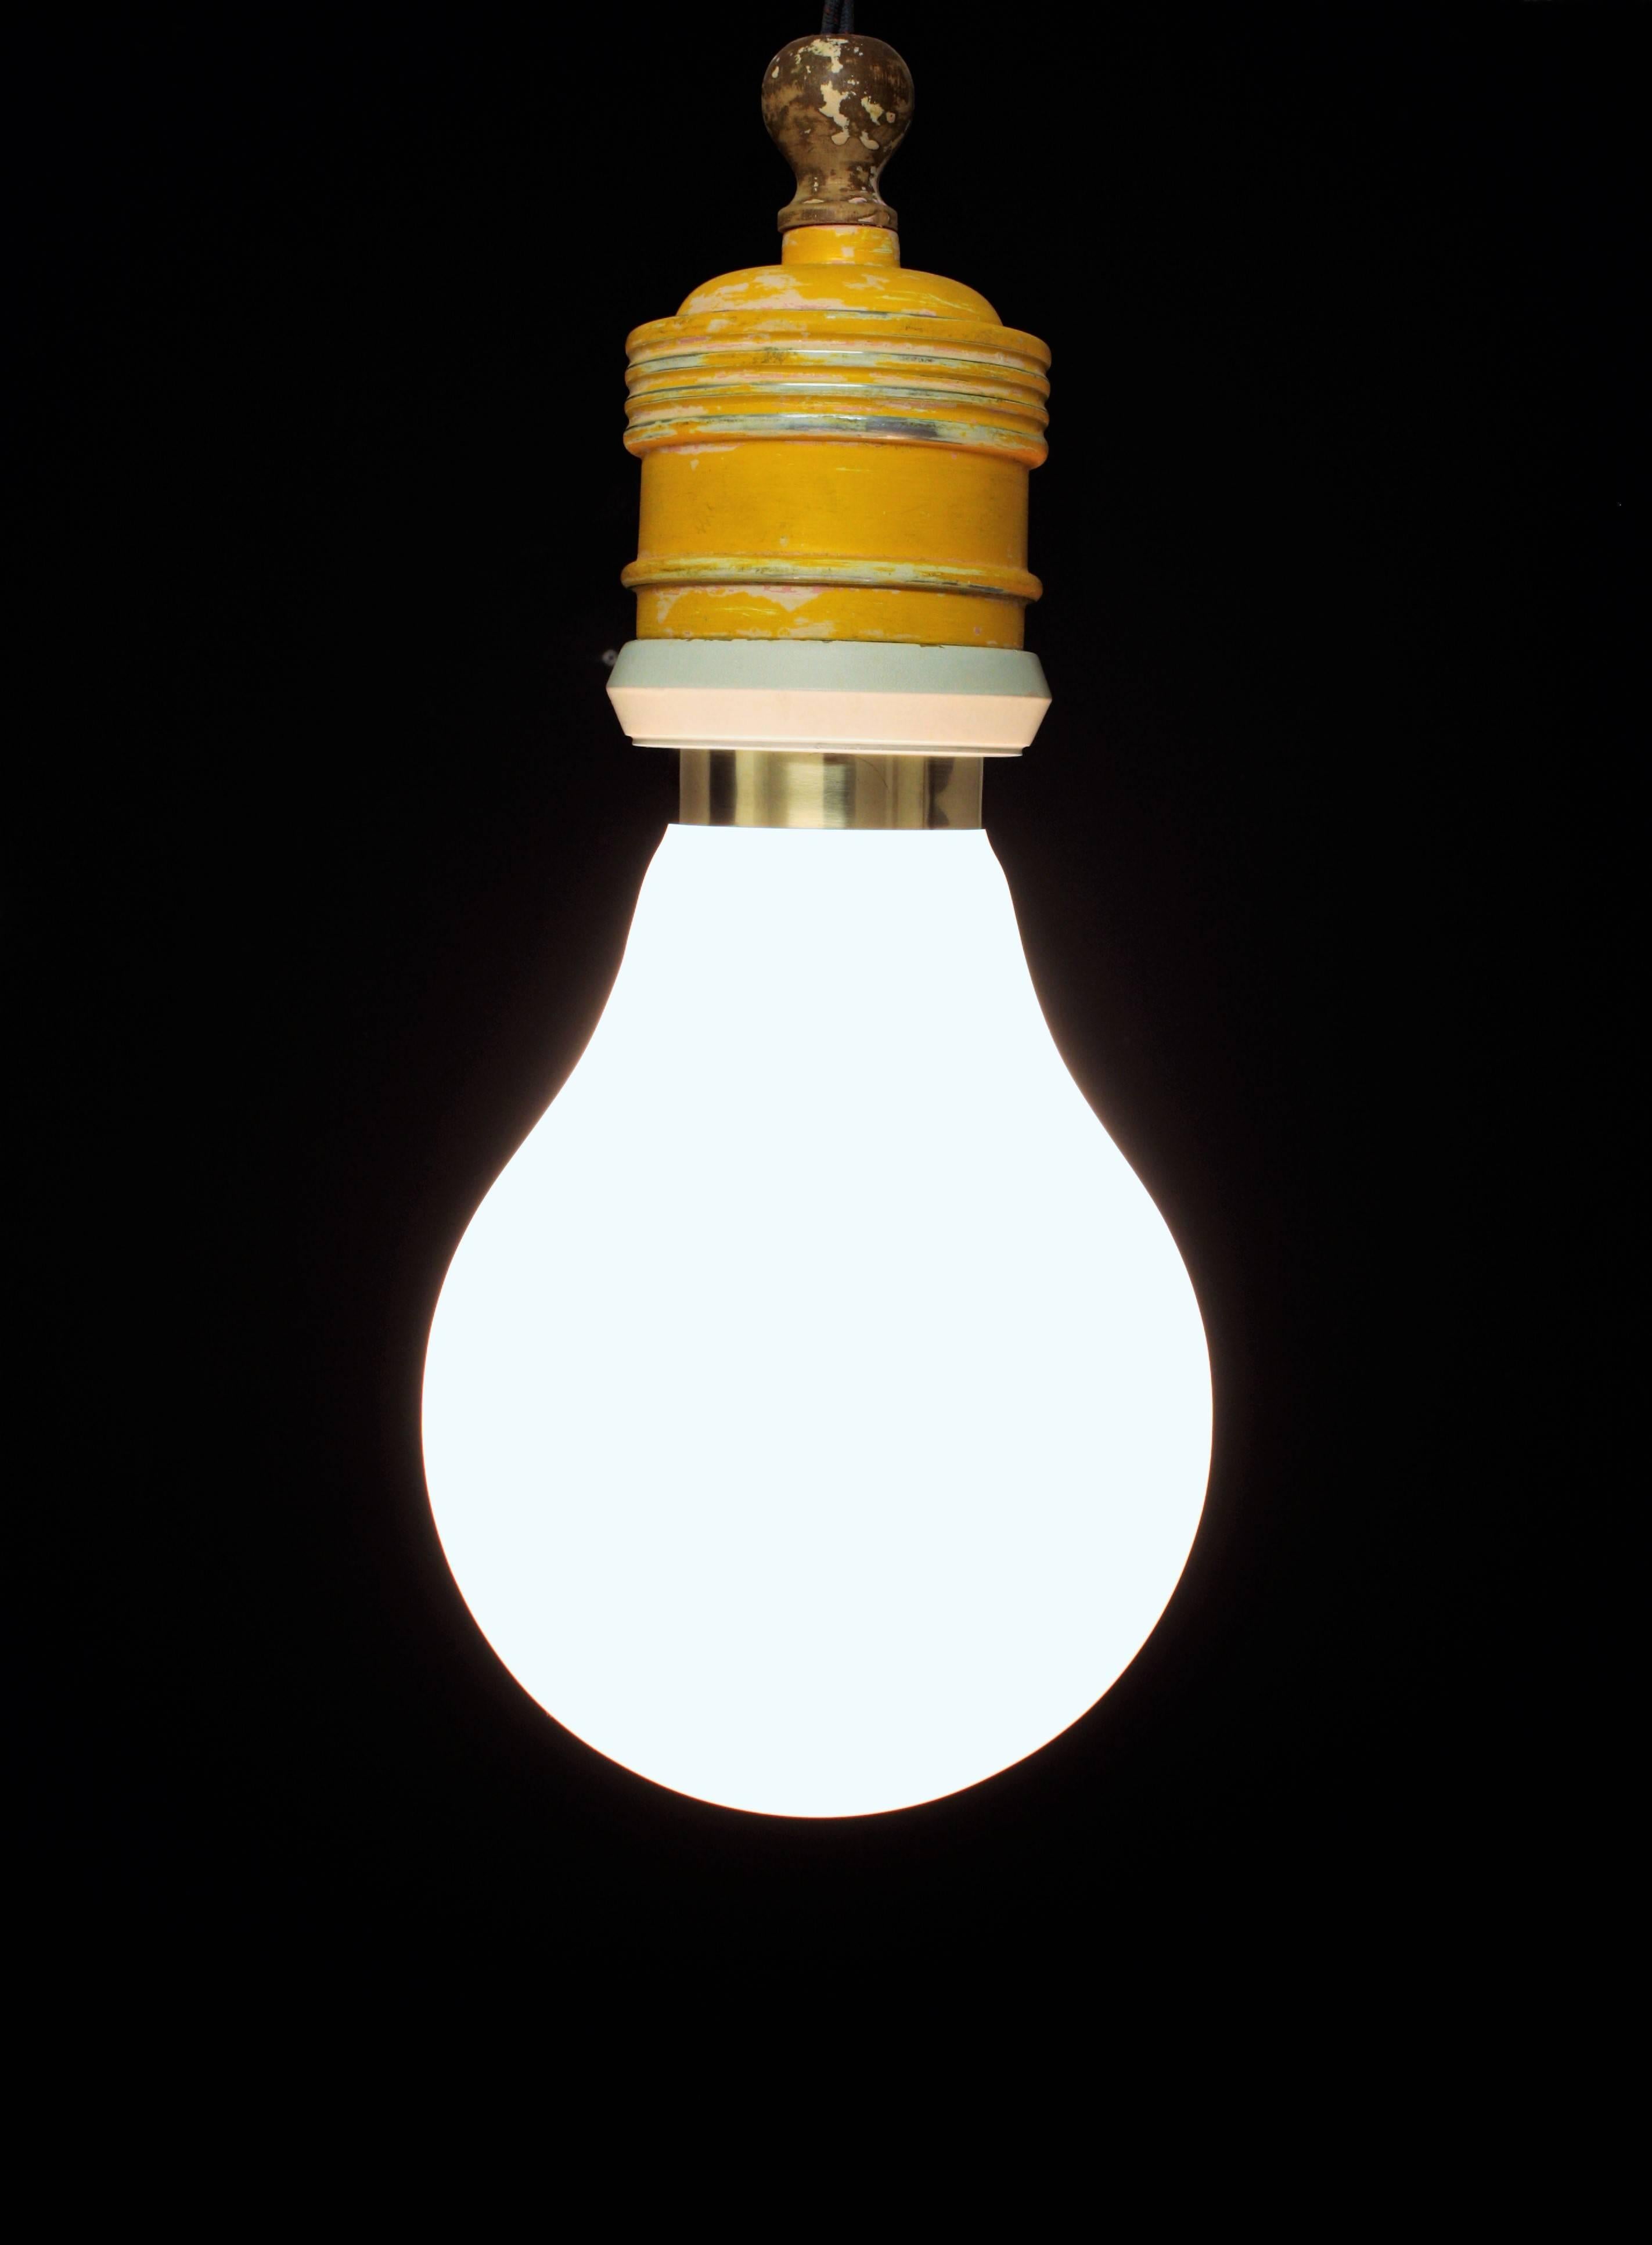 Metalarte Riesenbirnen-Pendelleuchte, hergestellt in Spanien Ende der 1960er Jahre. 
Diese schöne Lampe war ein Modell, das Metalarte im Stil der Bulb-Bulb-Lampe anfertigte, die Ingo Maurer 1965 für Design M entwarf.
Sie besteht aus einem riesigen